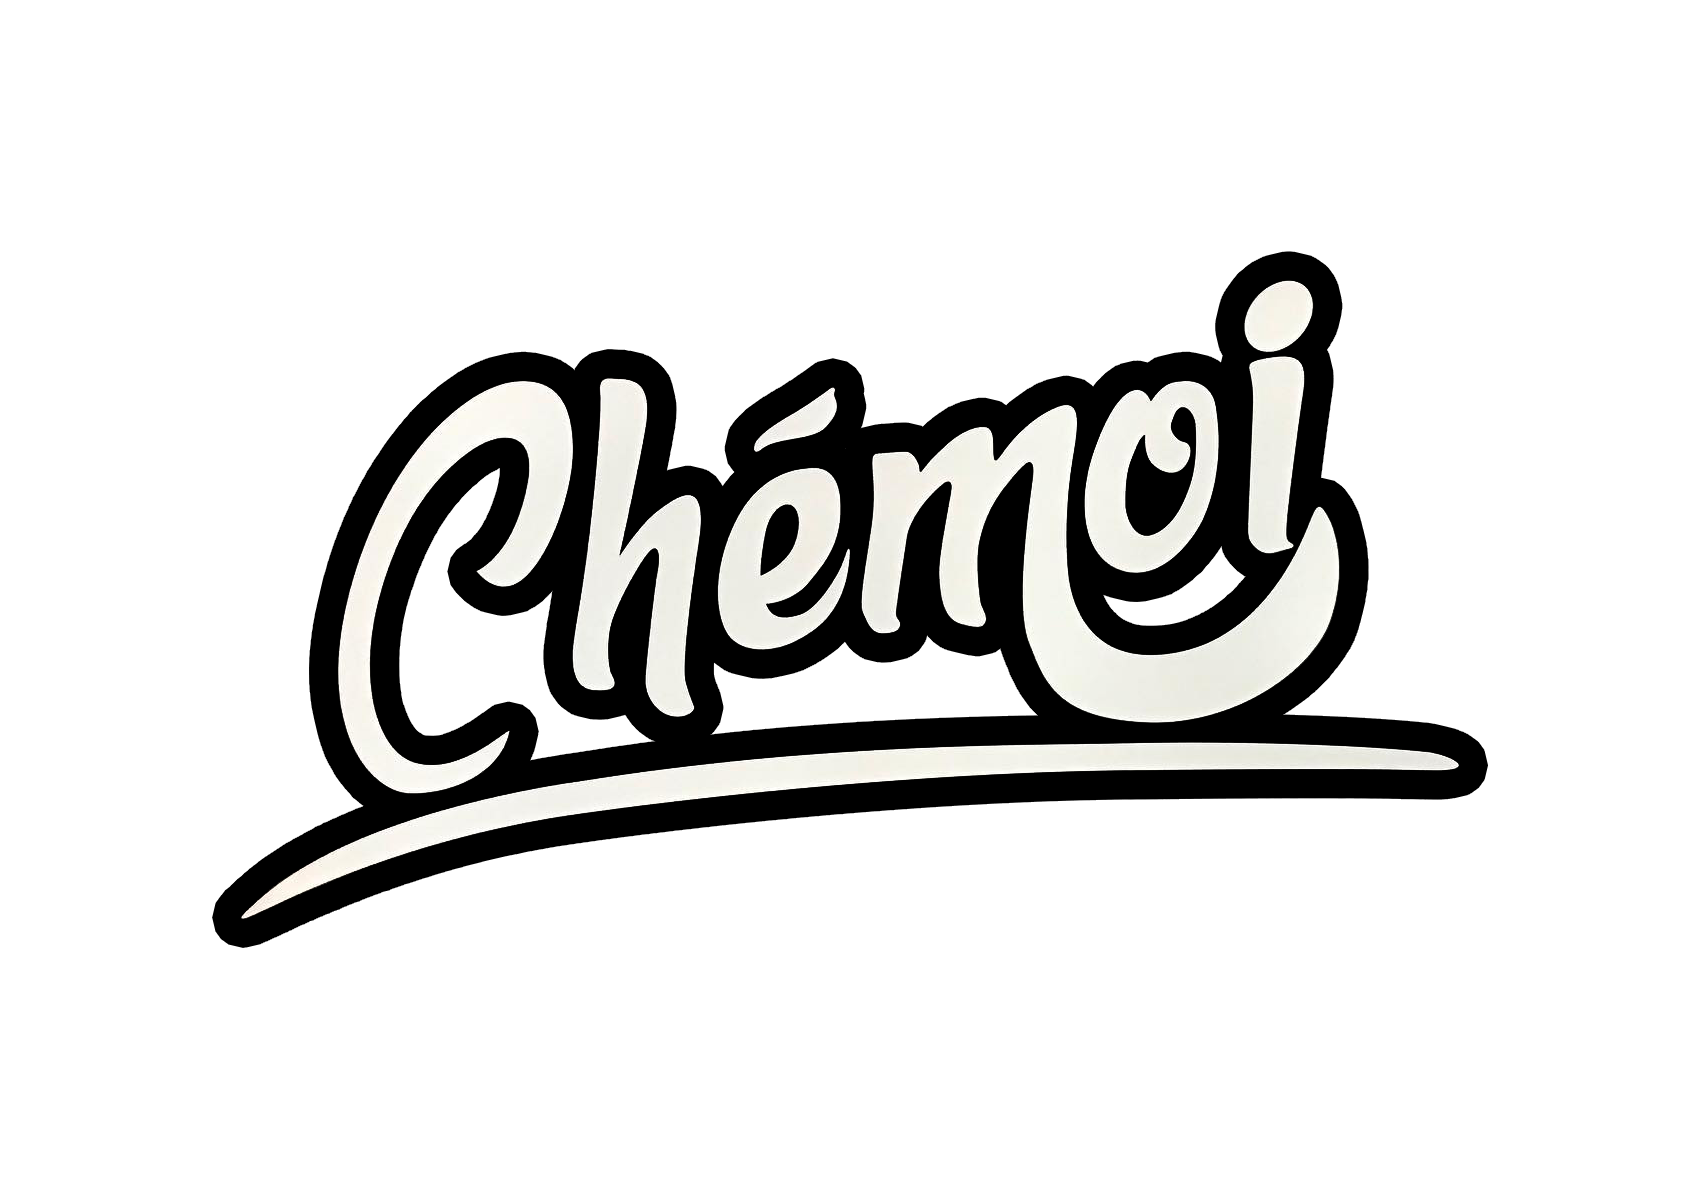 Restaurant Chémoi